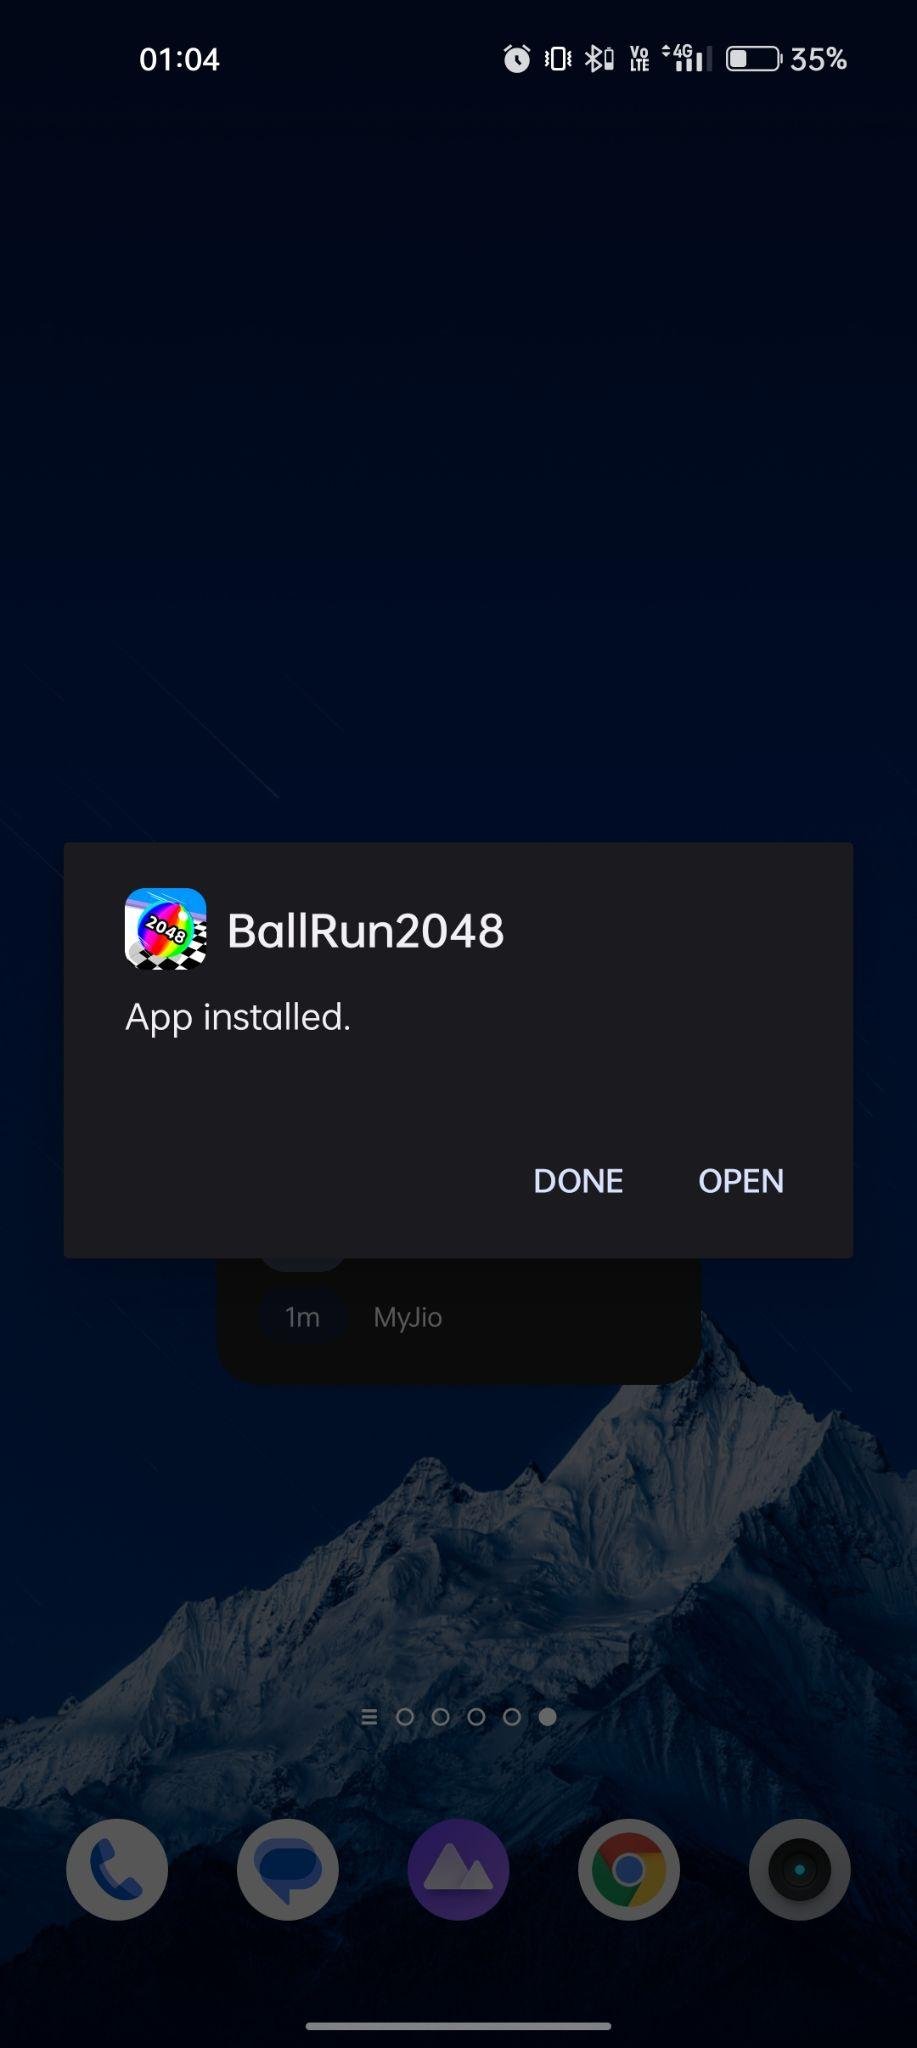 Ball Run 2048 apk installed